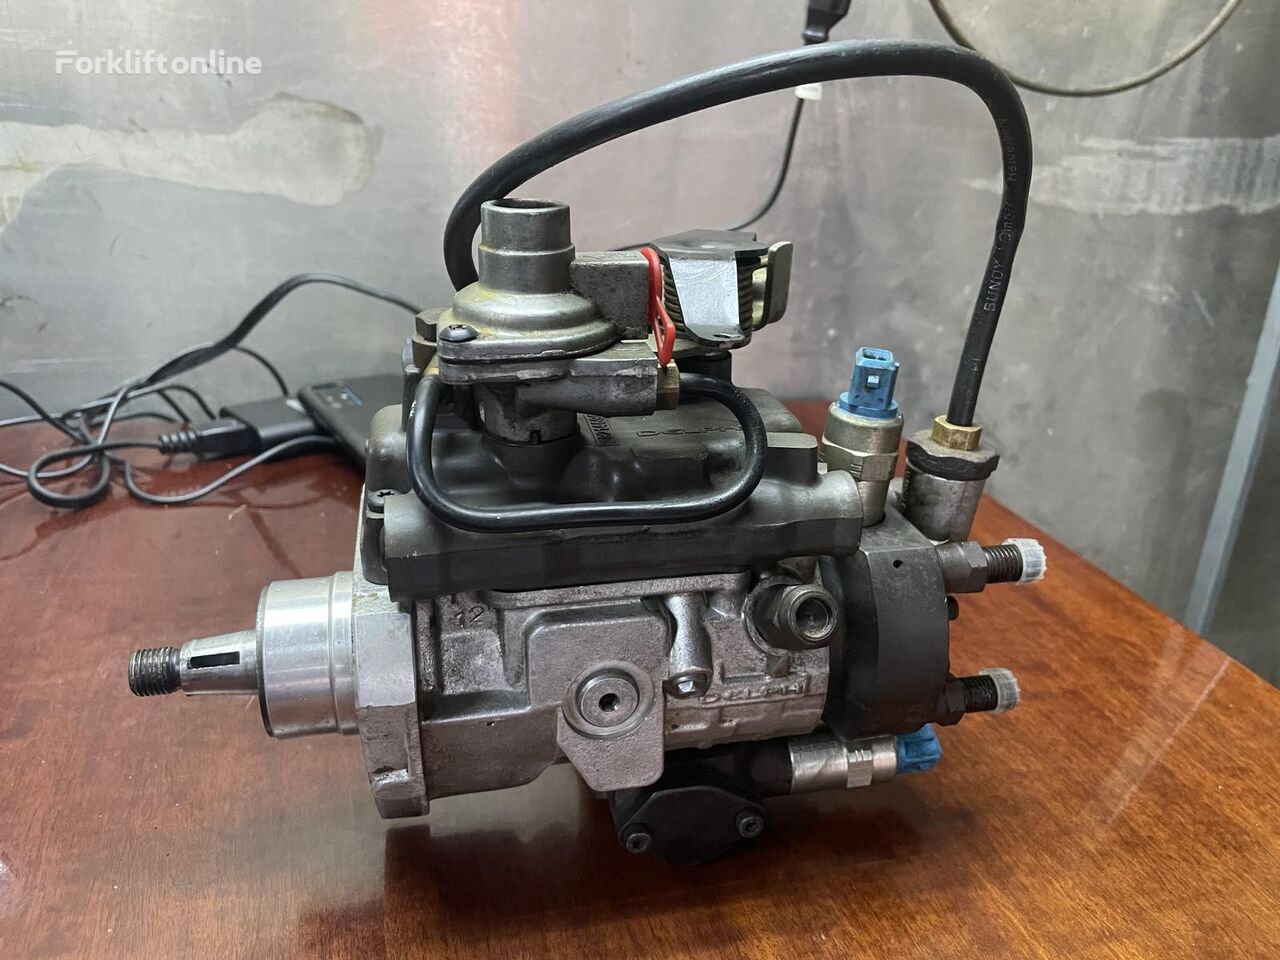 Delphi 320/06869 injection pump for JCB telehandler